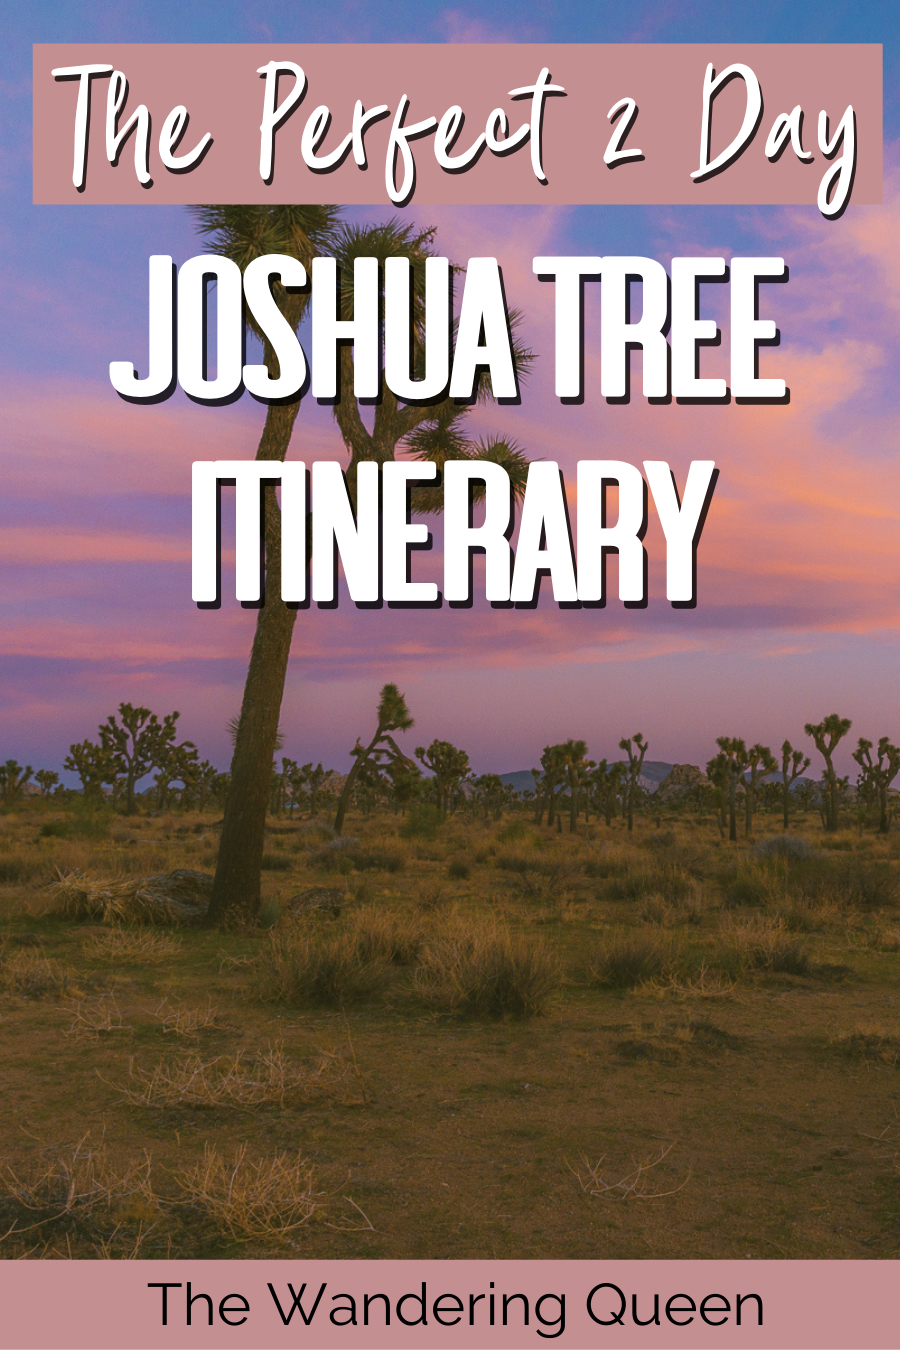 Joshua Tree Itinerary